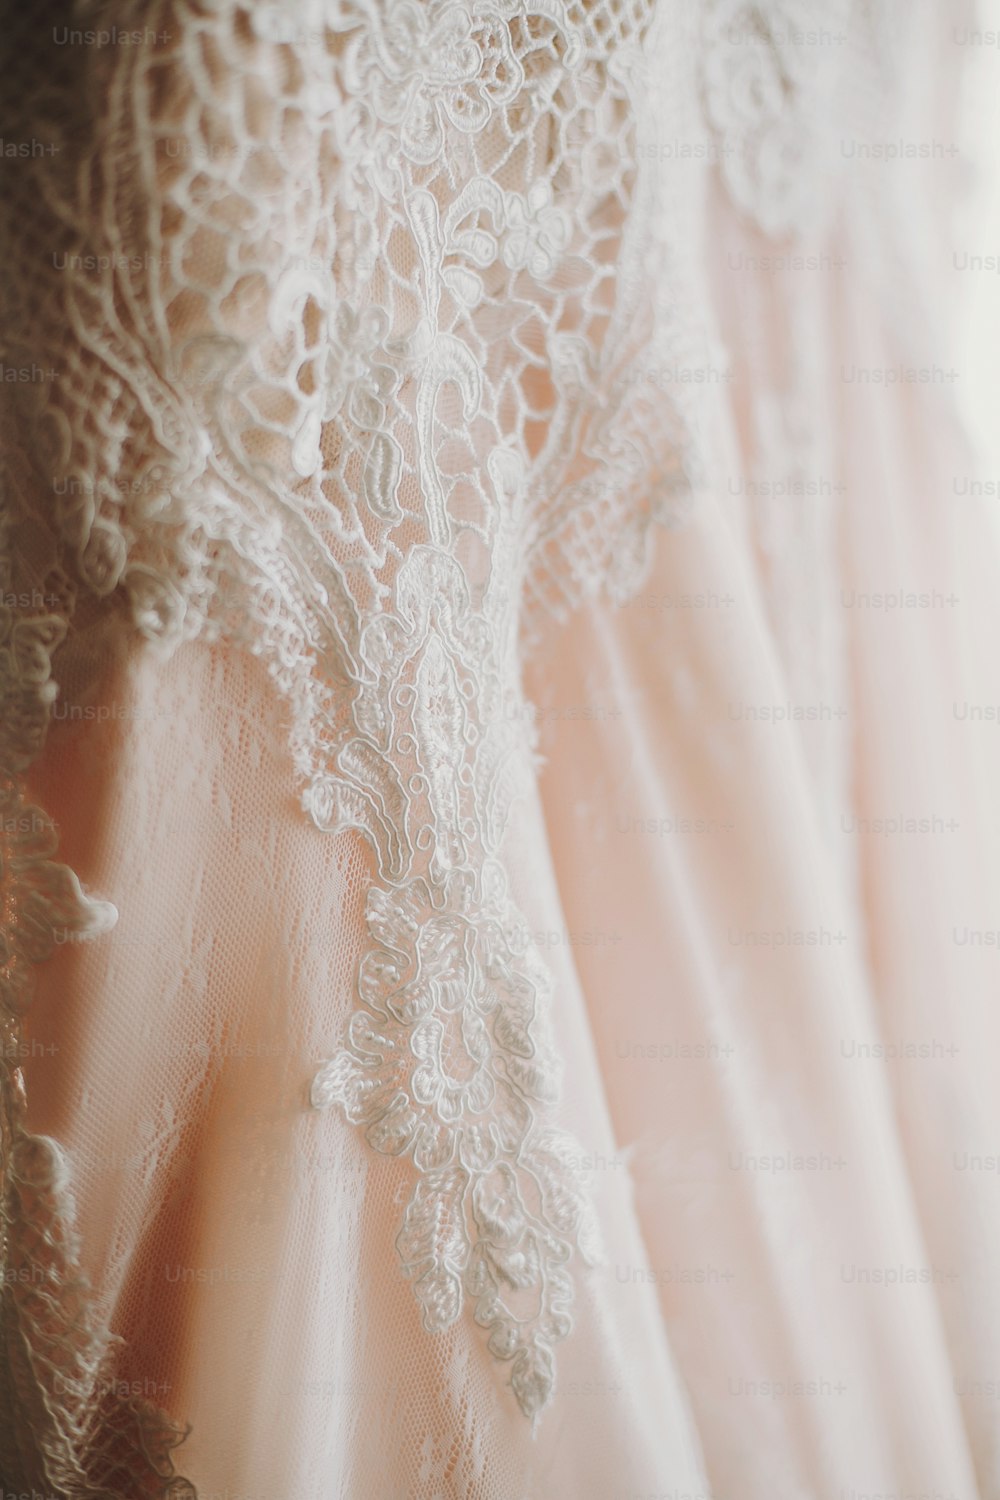 Luxus modernes Hochzeitskleid am Fenster hängend. Erstaunliches stilvolles Hochzeitskleid mit floralen Spitzendetails, pastellrosa Farbe. Hochzeitssalon